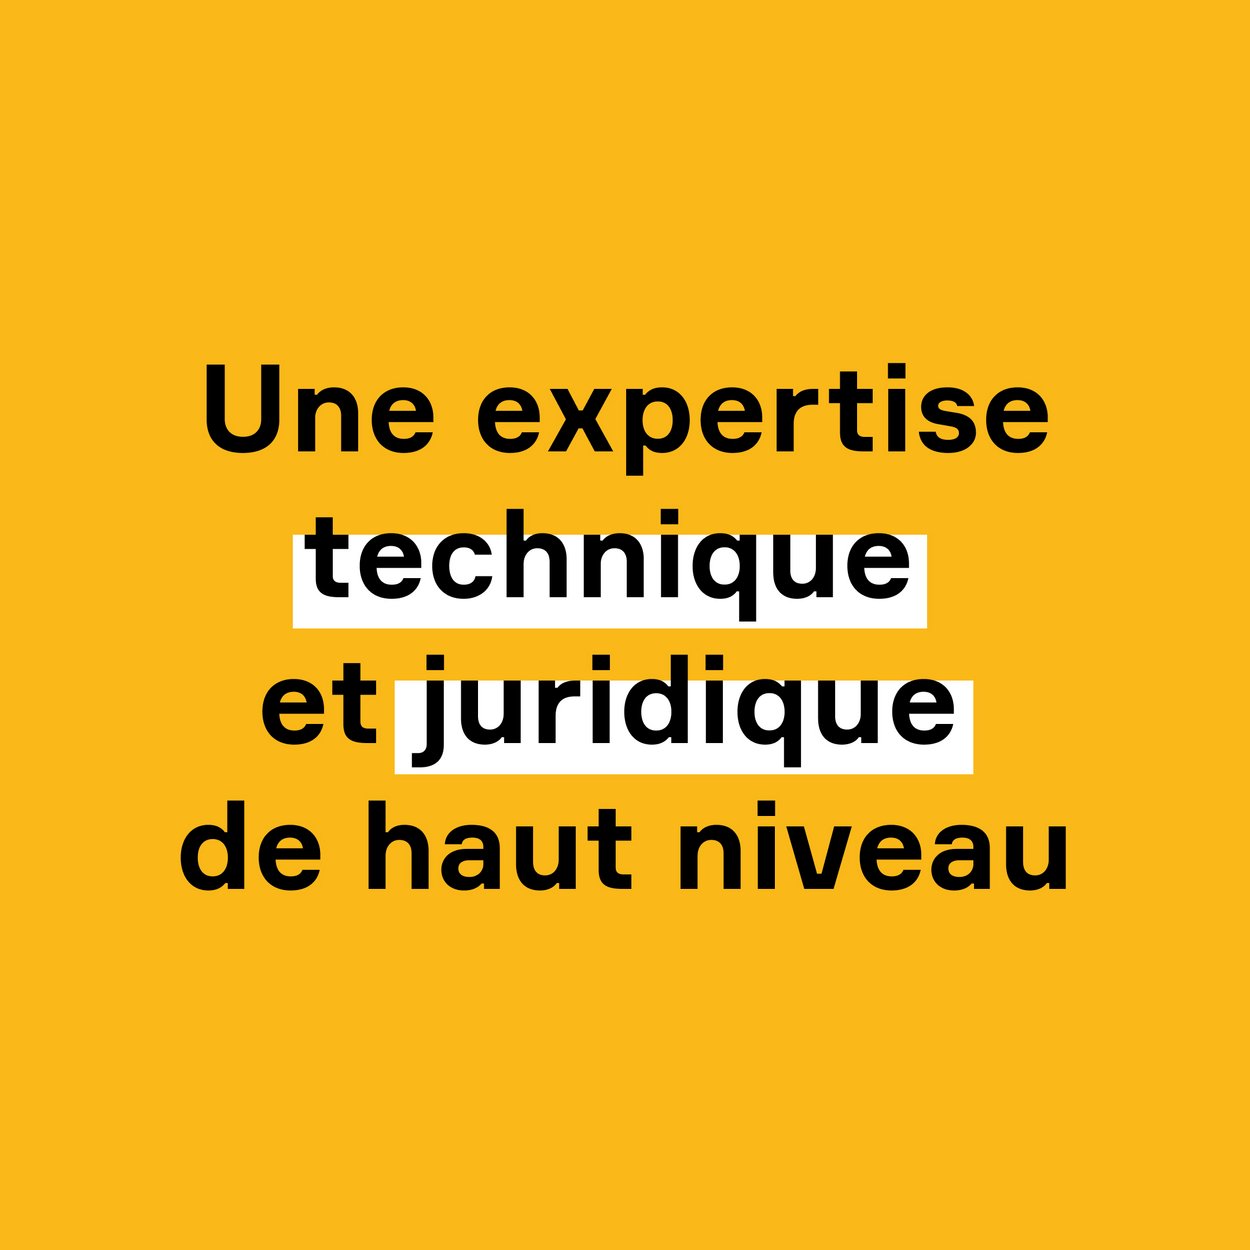 Carré jaune accueillant le texte "Une expertise technique et juridique de haut niveau". Mise en exergue des termes technique et juridique. 